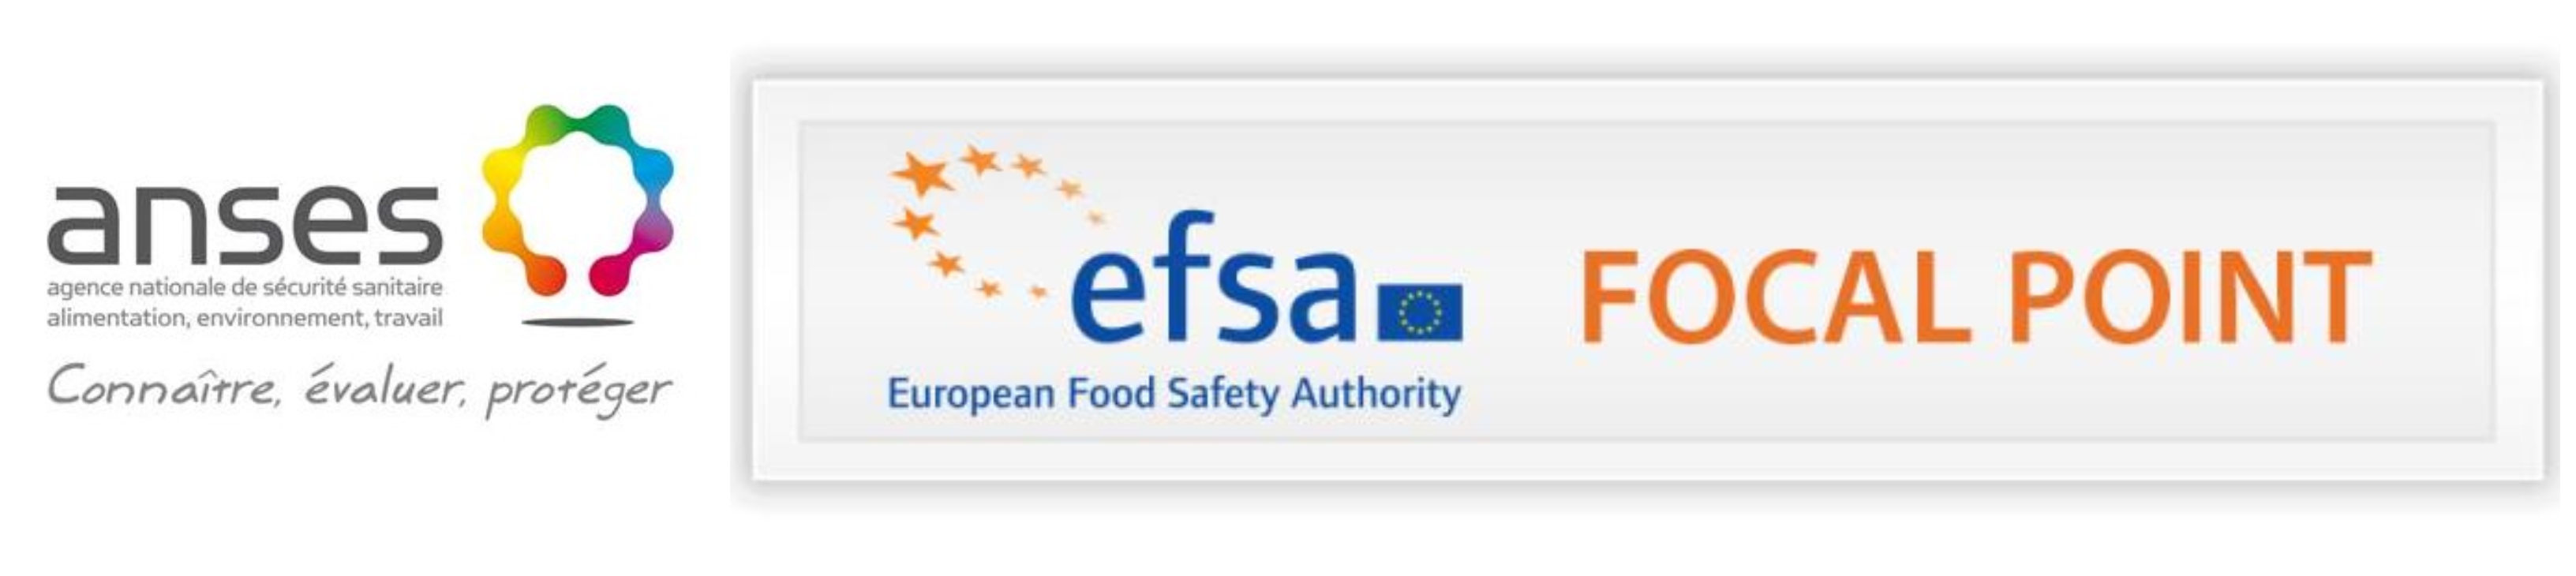 logos de l'ANSES et du point focal de l'EFSA